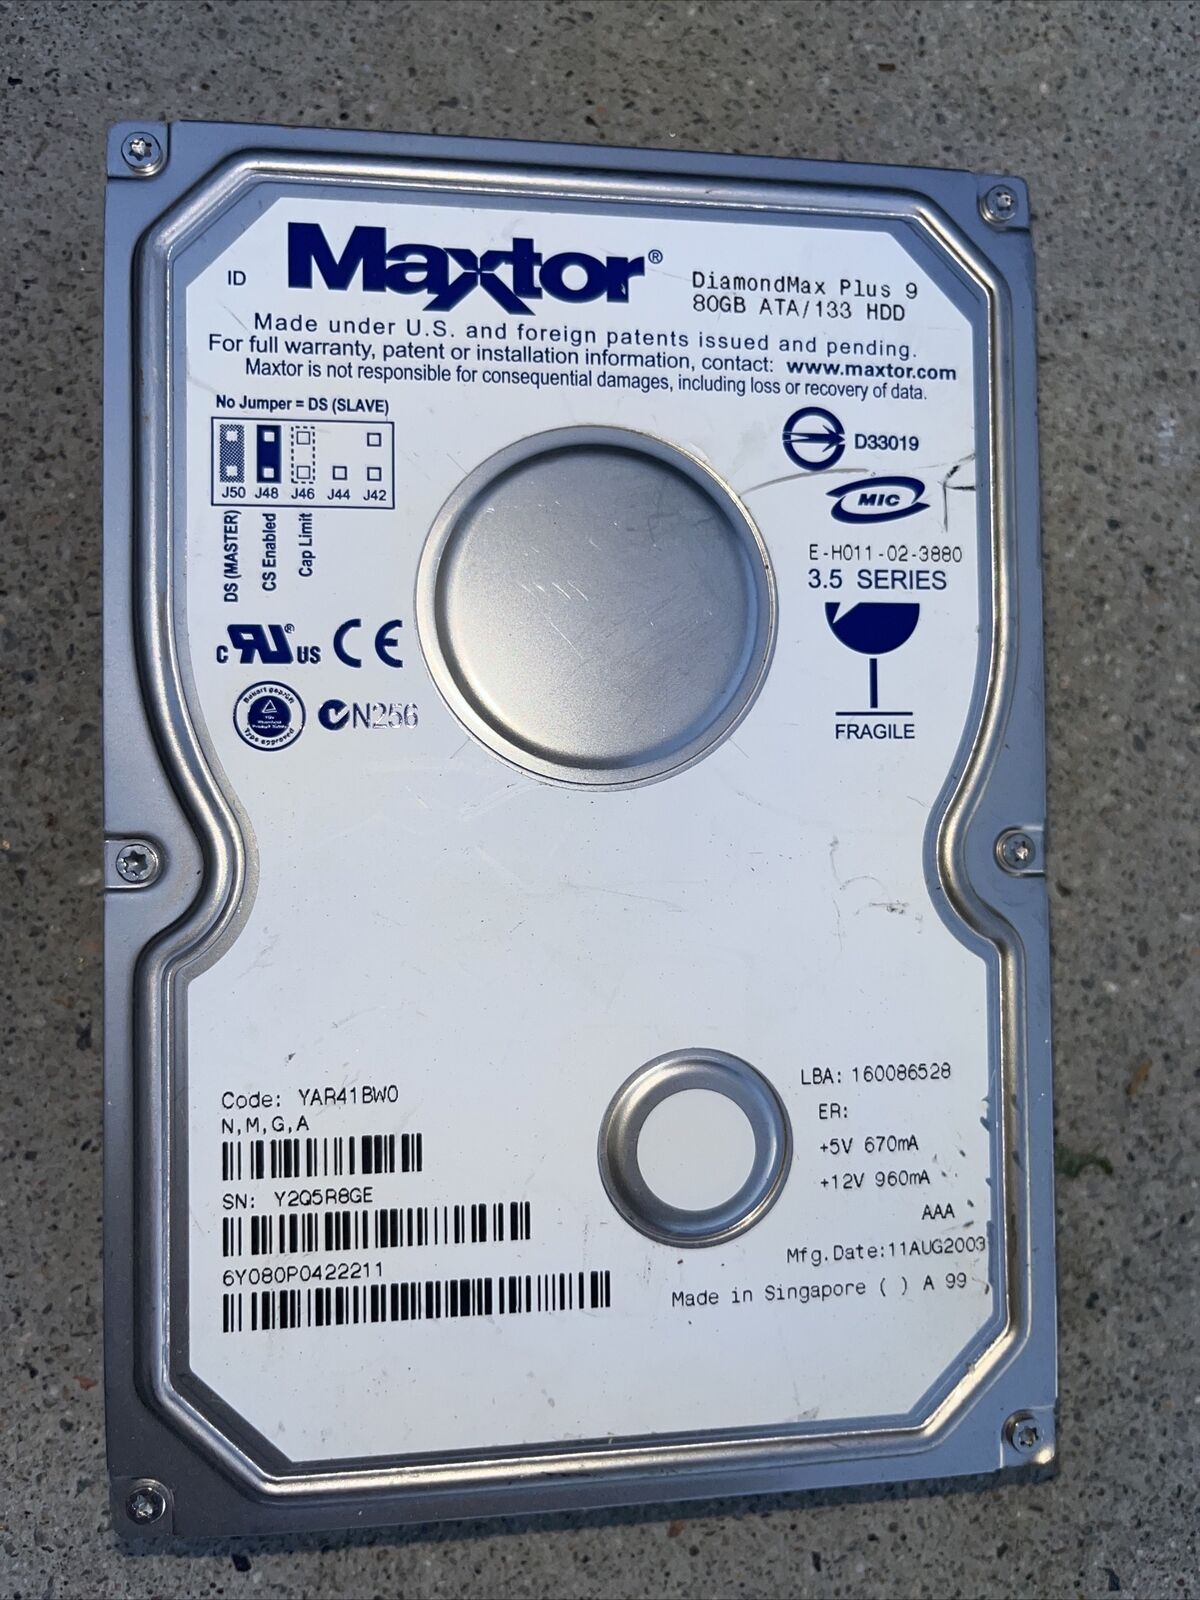 Maxtor DiamondMax Plus 9 80GB UDMA/133 7200RPM 2MB IDE Hard Drive